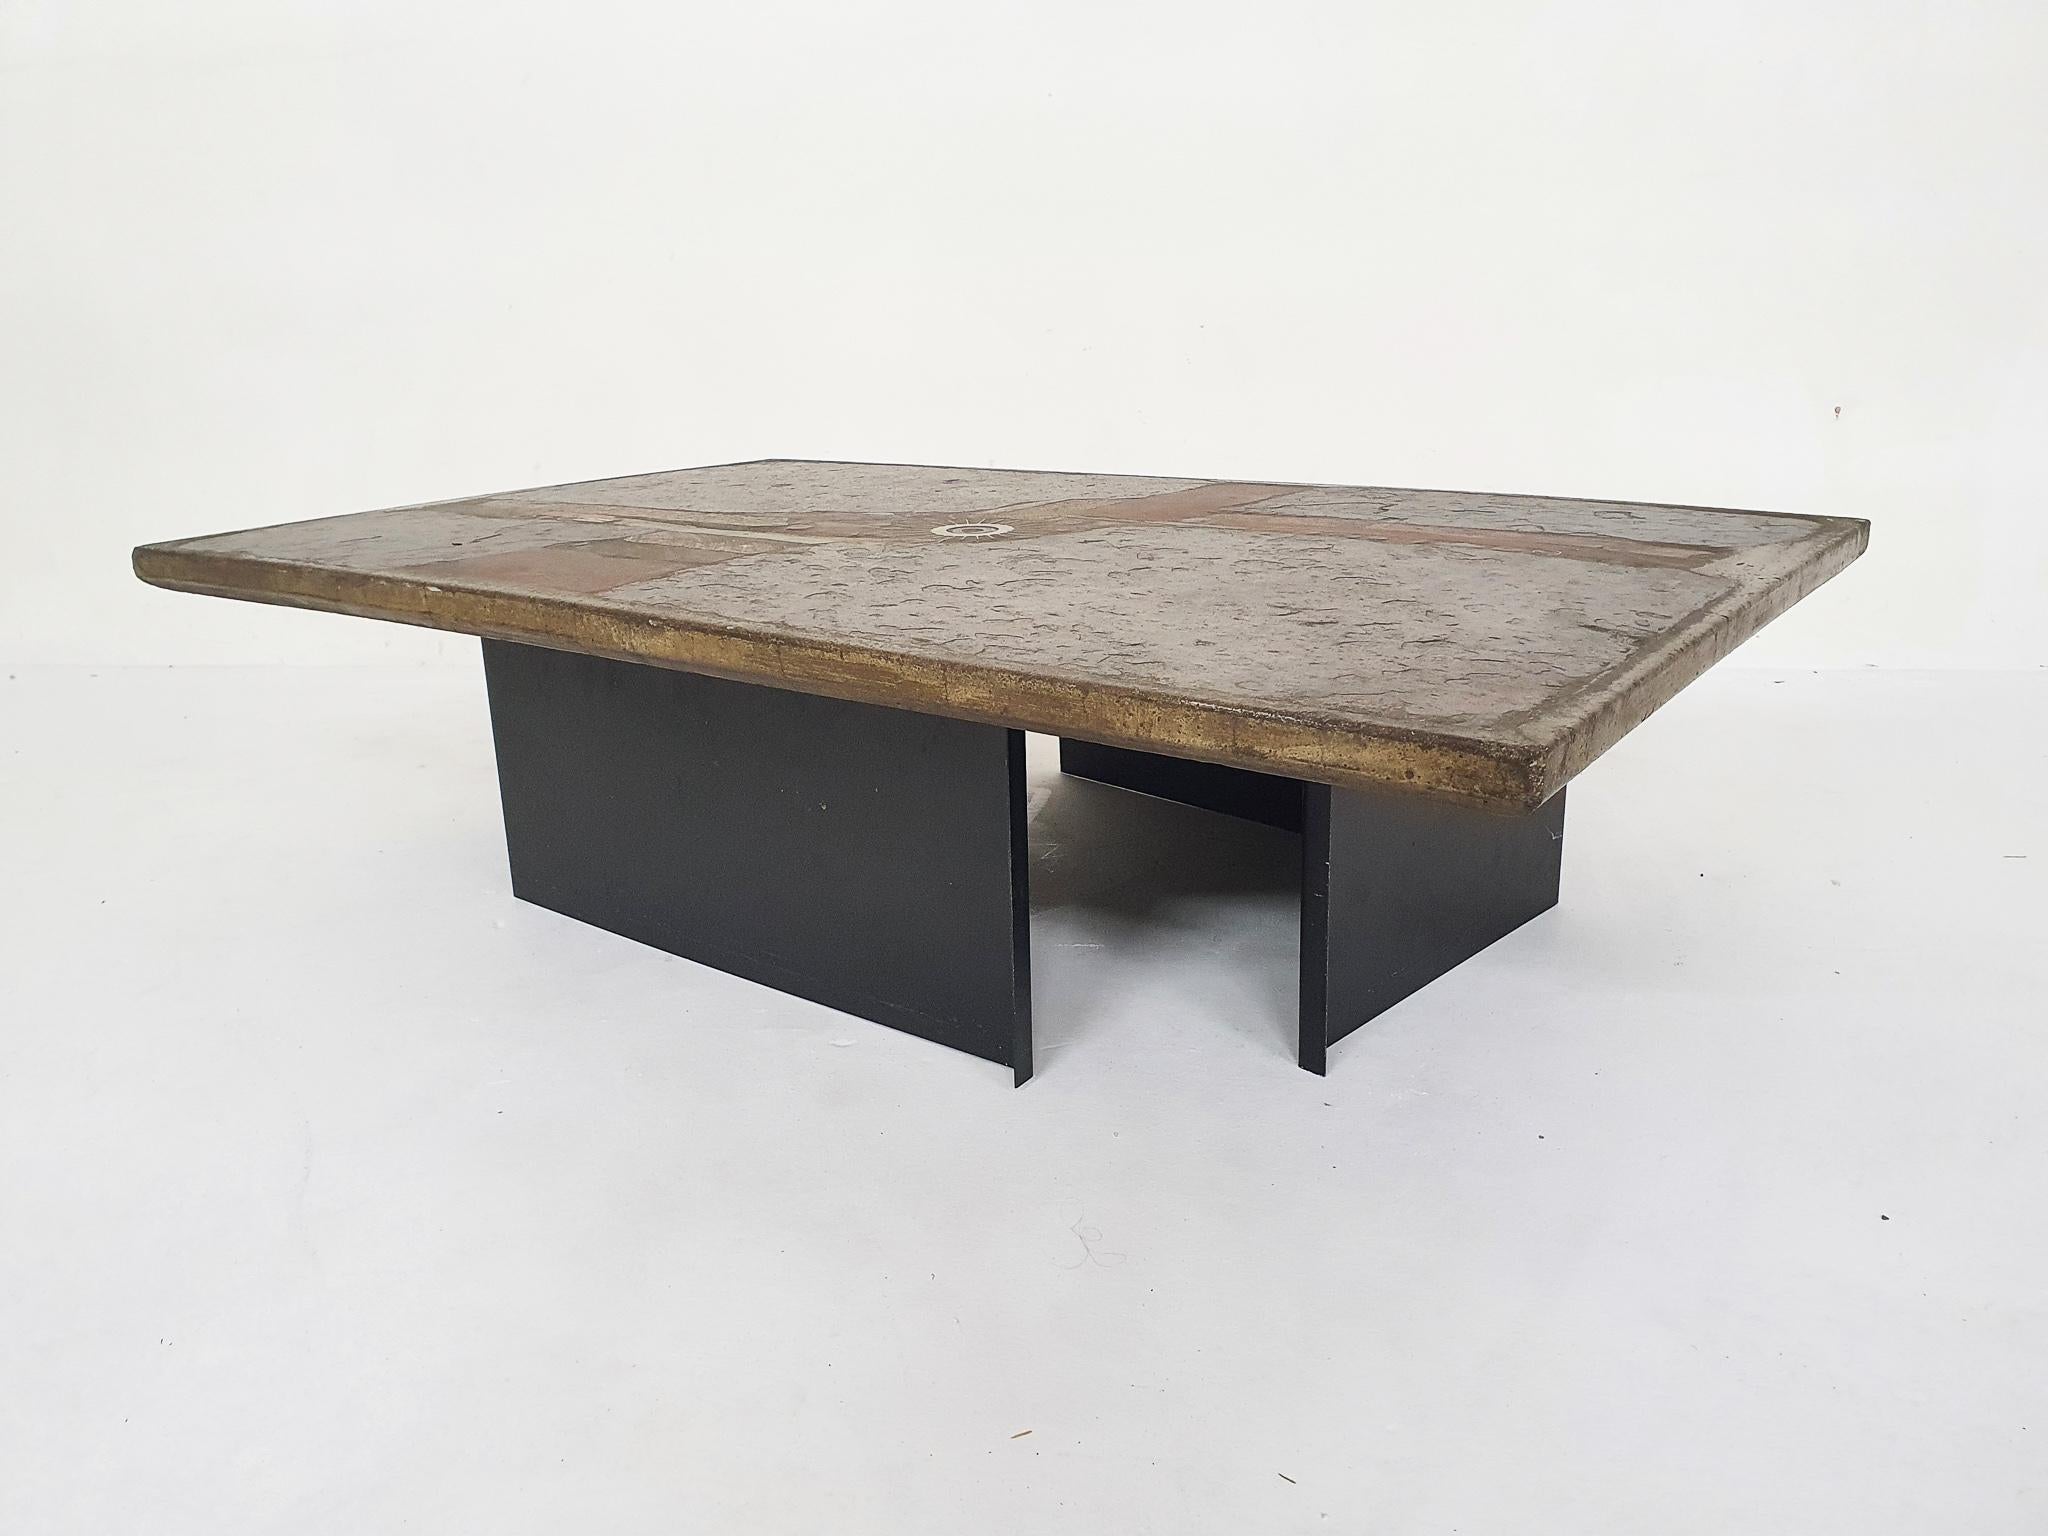 Table basse en pierre sur deux plateaux métalliques en forme de L. Conçu et signé par l'artiste Paul Kingma.

Paul Kingma, né en 1931, est un sculpteur et mosaïste néerlandais. Dans ses jeunes années, il a étudié l'art à Arnhem et est devenu